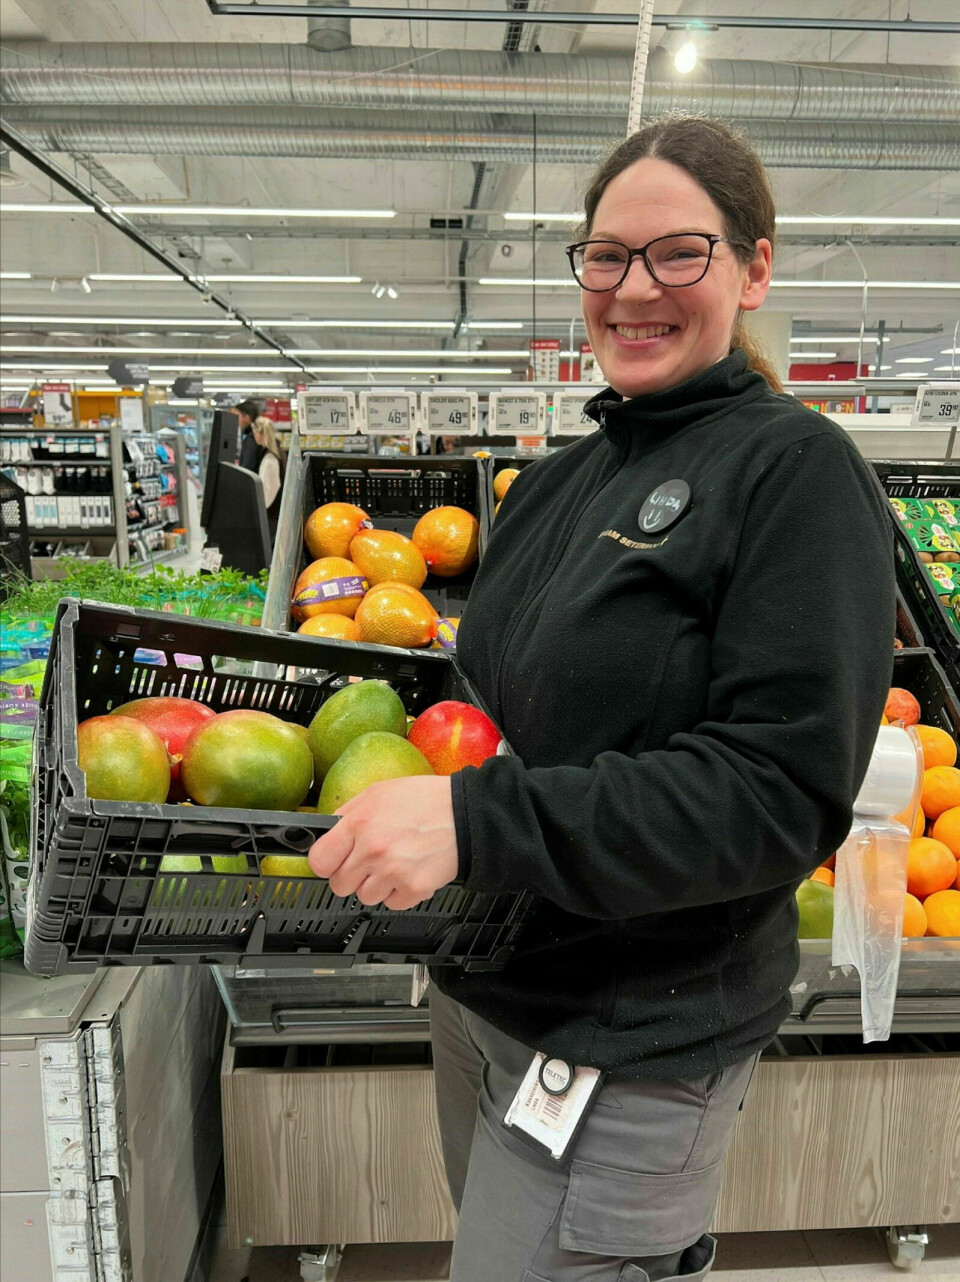 MANGOSALG: Frukt- og grøntansvarlig ved Extra Setermoen, Linda Renate Bonaas, viser til vanvittig salgsøkning av mango under kampanjetilbudet de kjørte. Foto: Privat